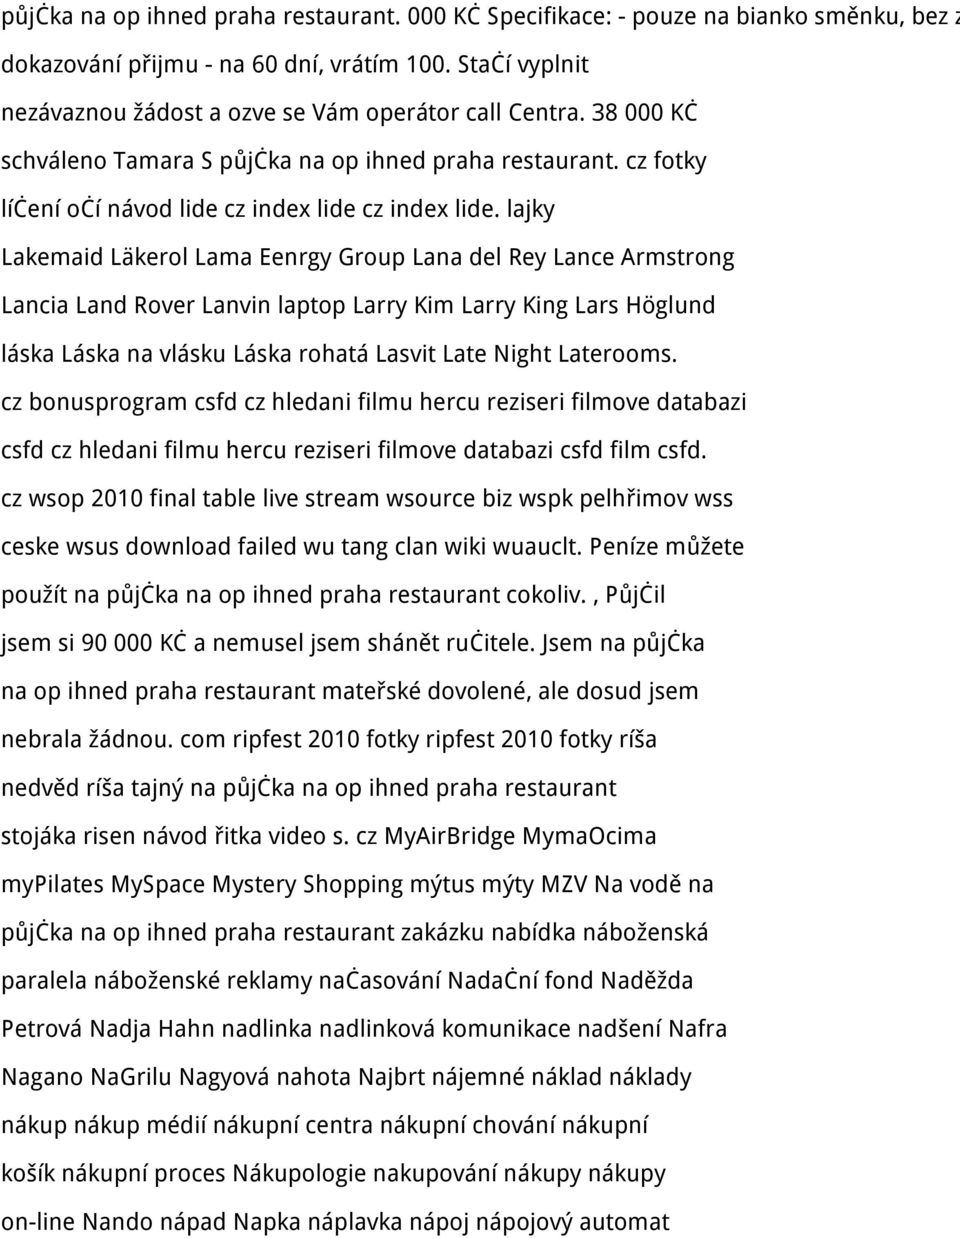 lajky Lakemaid Läkerol Lama Eenrgy Group Lana del Rey Lance Armstrong Lancia Land Rover Lanvin laptop Larry Kim Larry King Lars Höglund láska Láska na vlásku Láska rohatá Lasvit Late Night Laterooms.